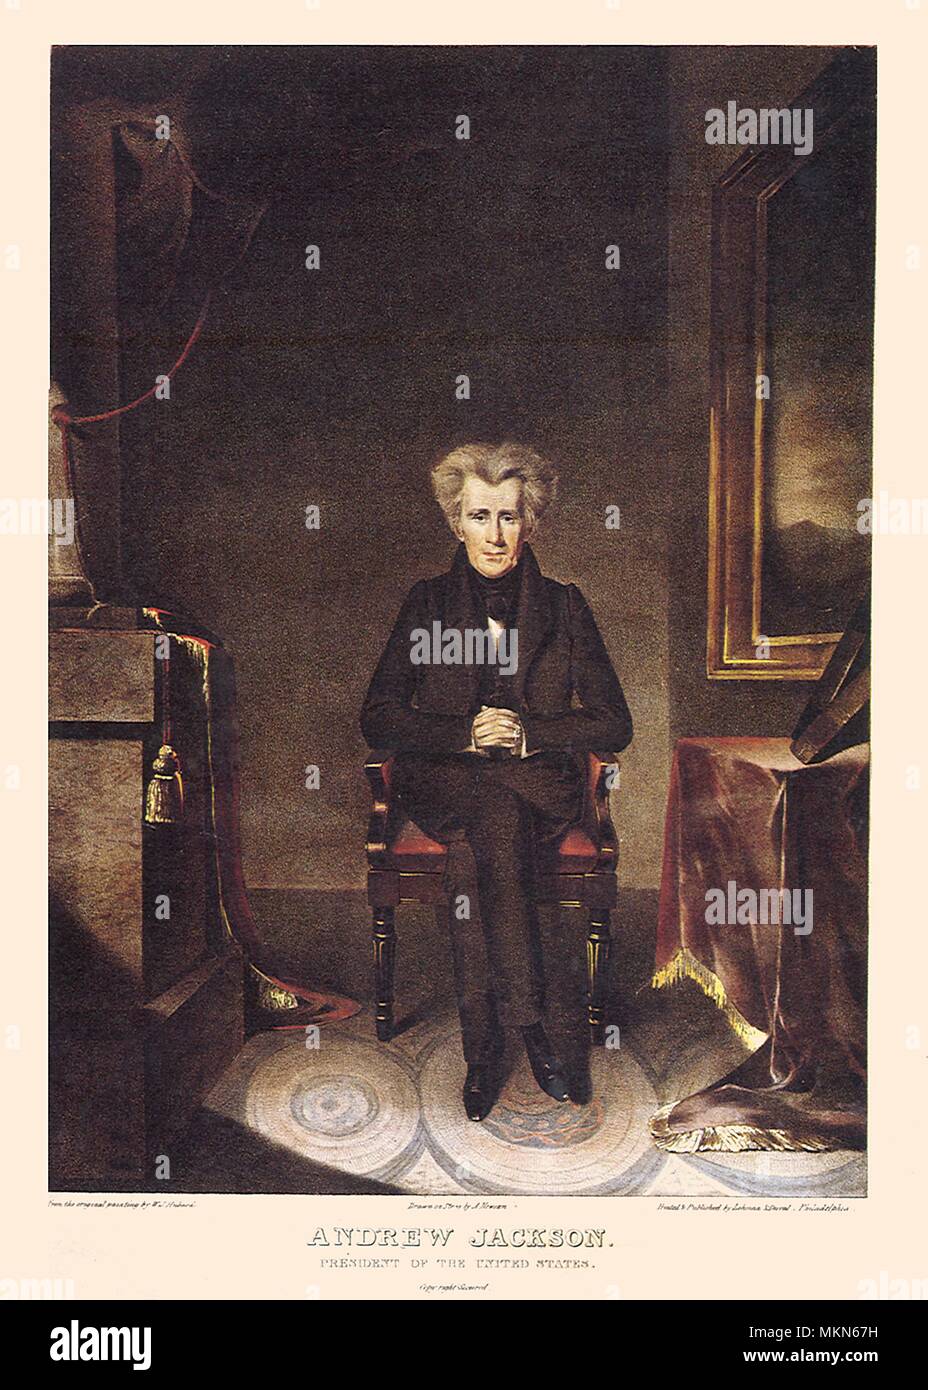 Andrew Jackson 1830 Stock Photo